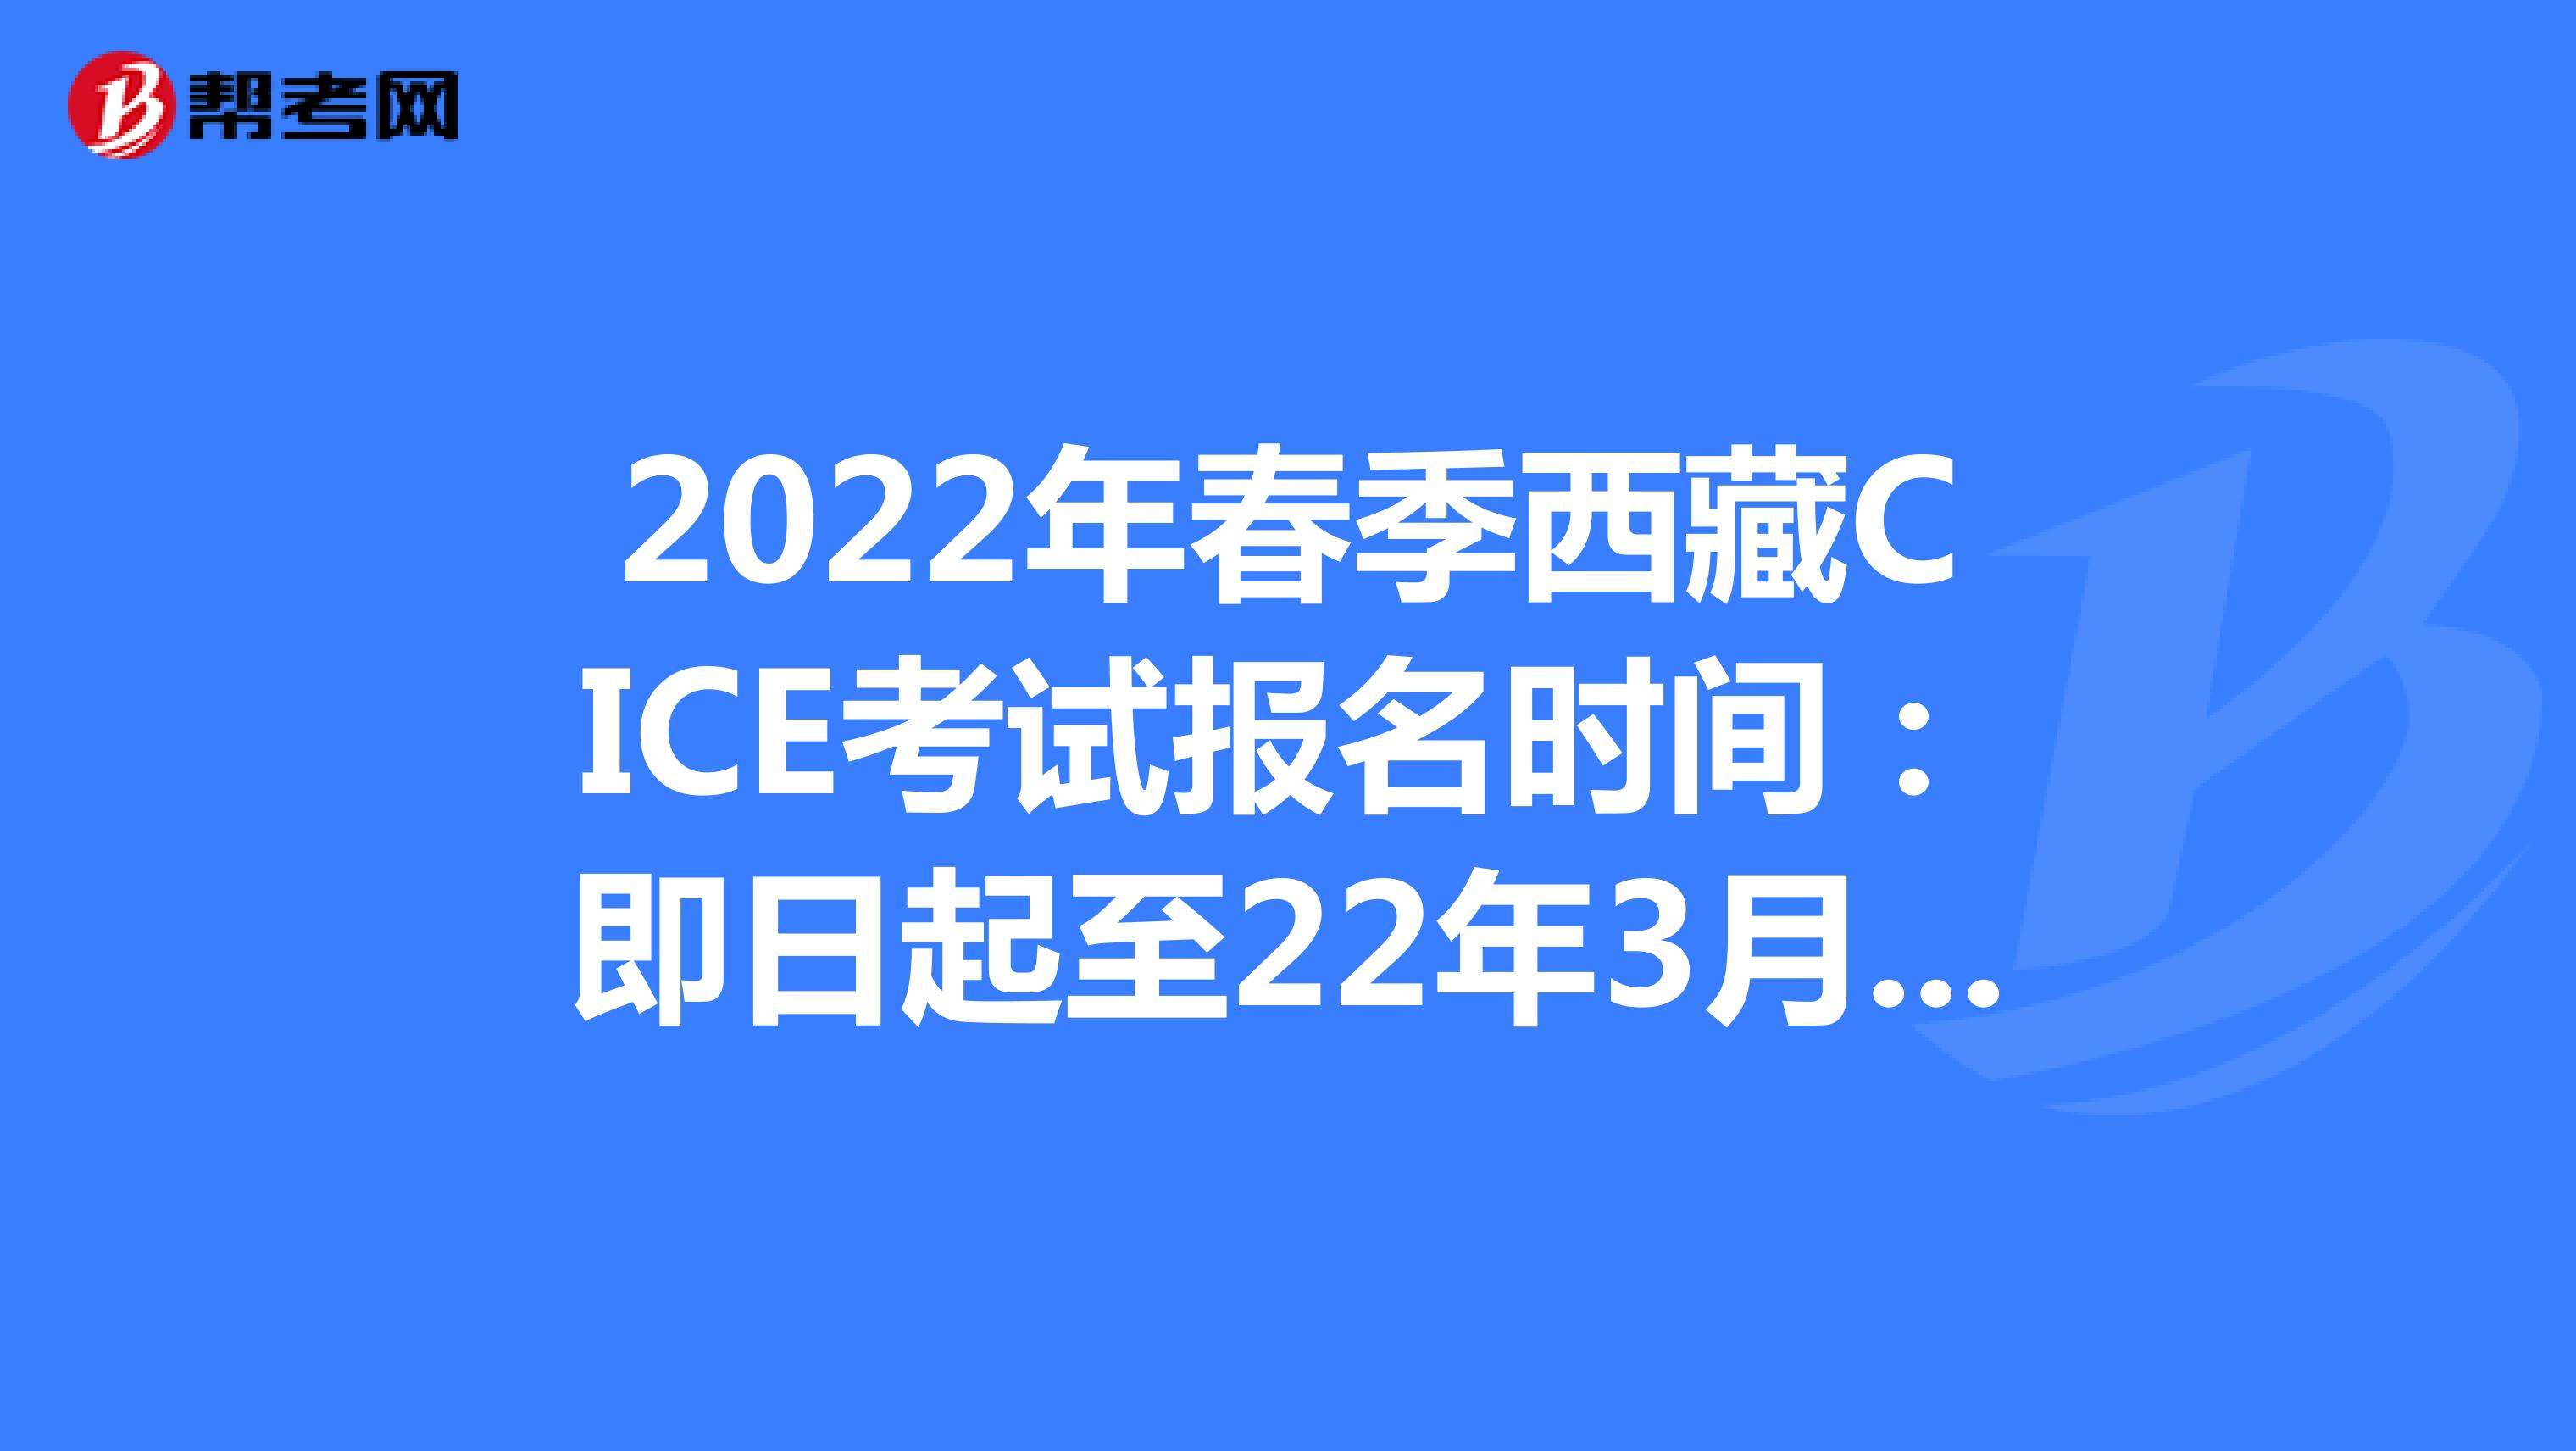 2022年春季西藏CICE考试报名时间：即日起至22年3月31日